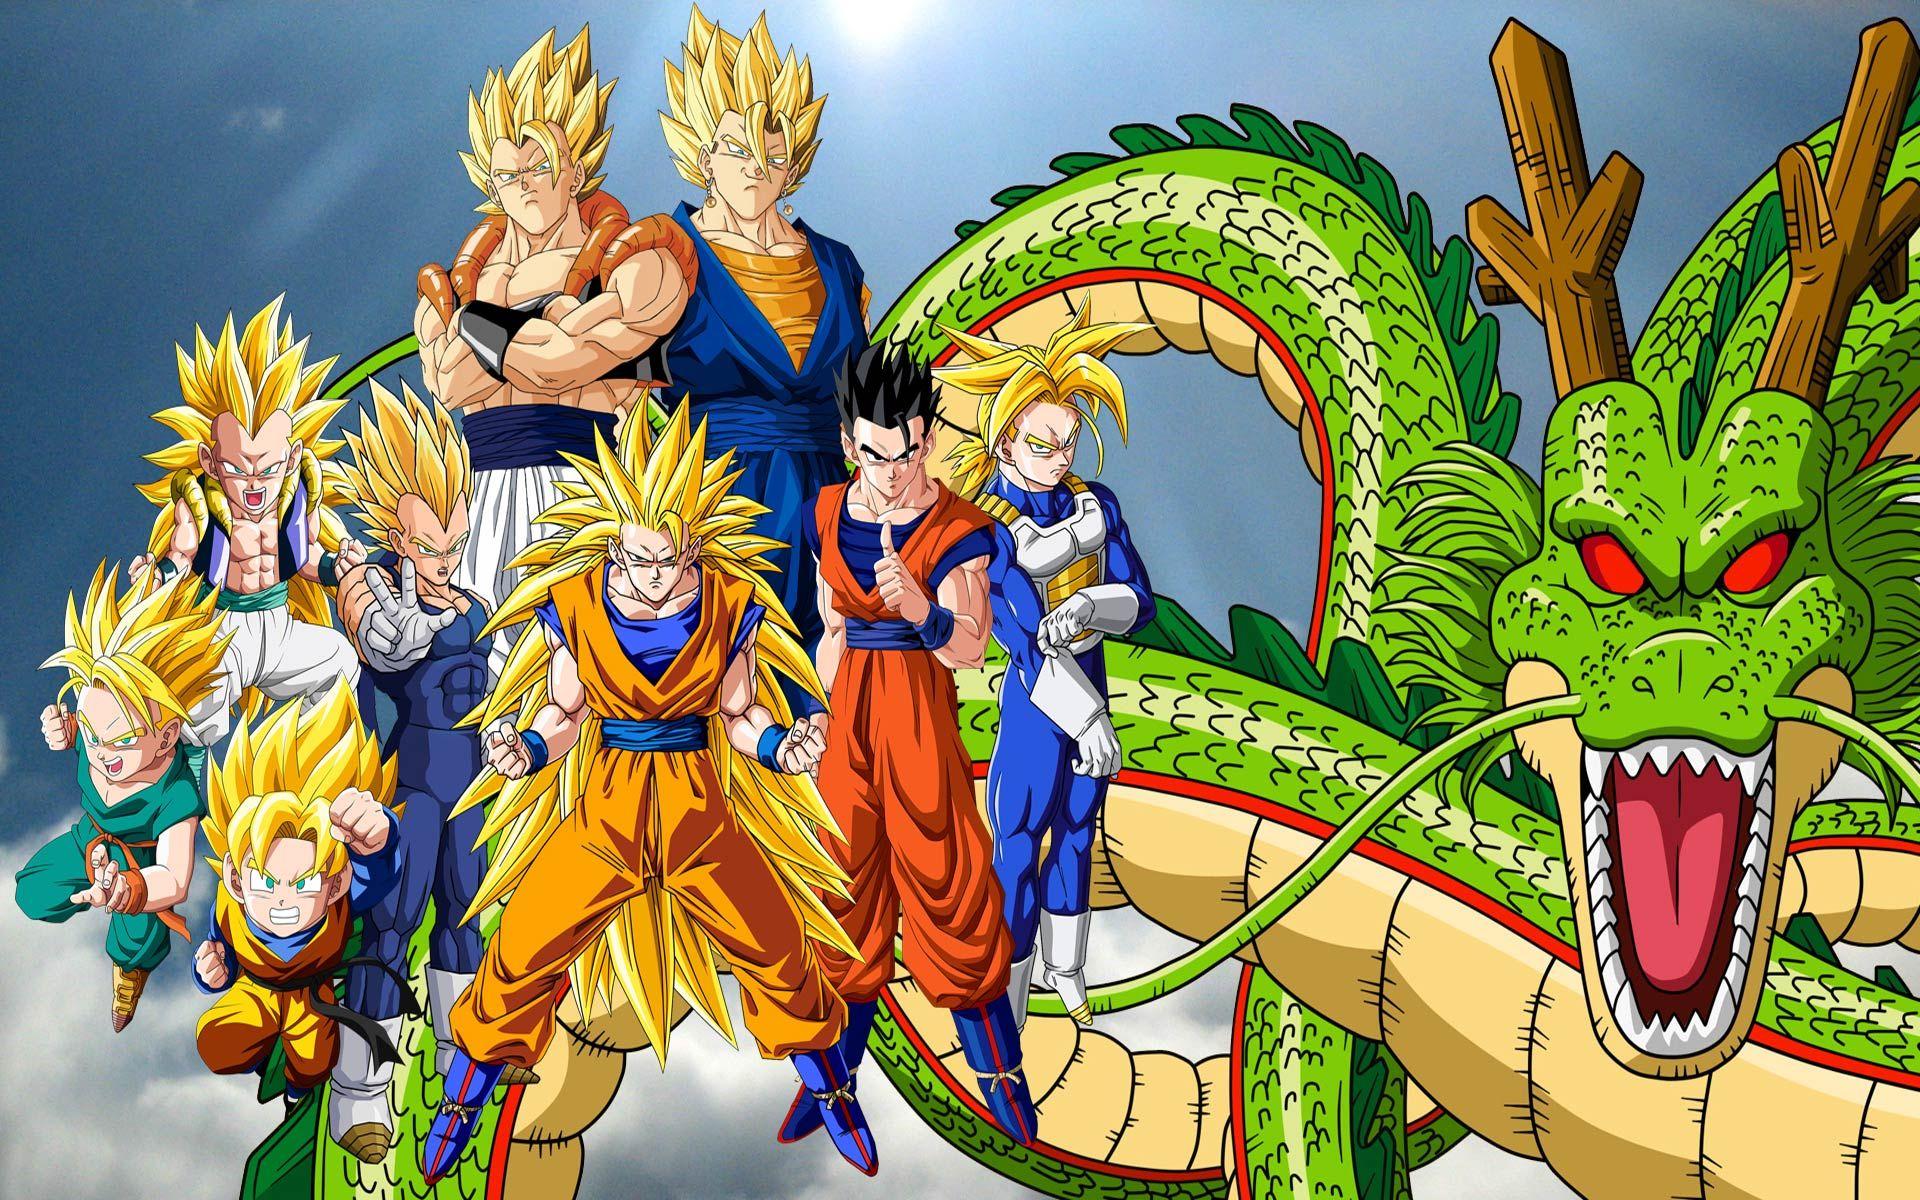 Desktop Image of Dragon Ball Z. Dragon Ball Z Wallpaper